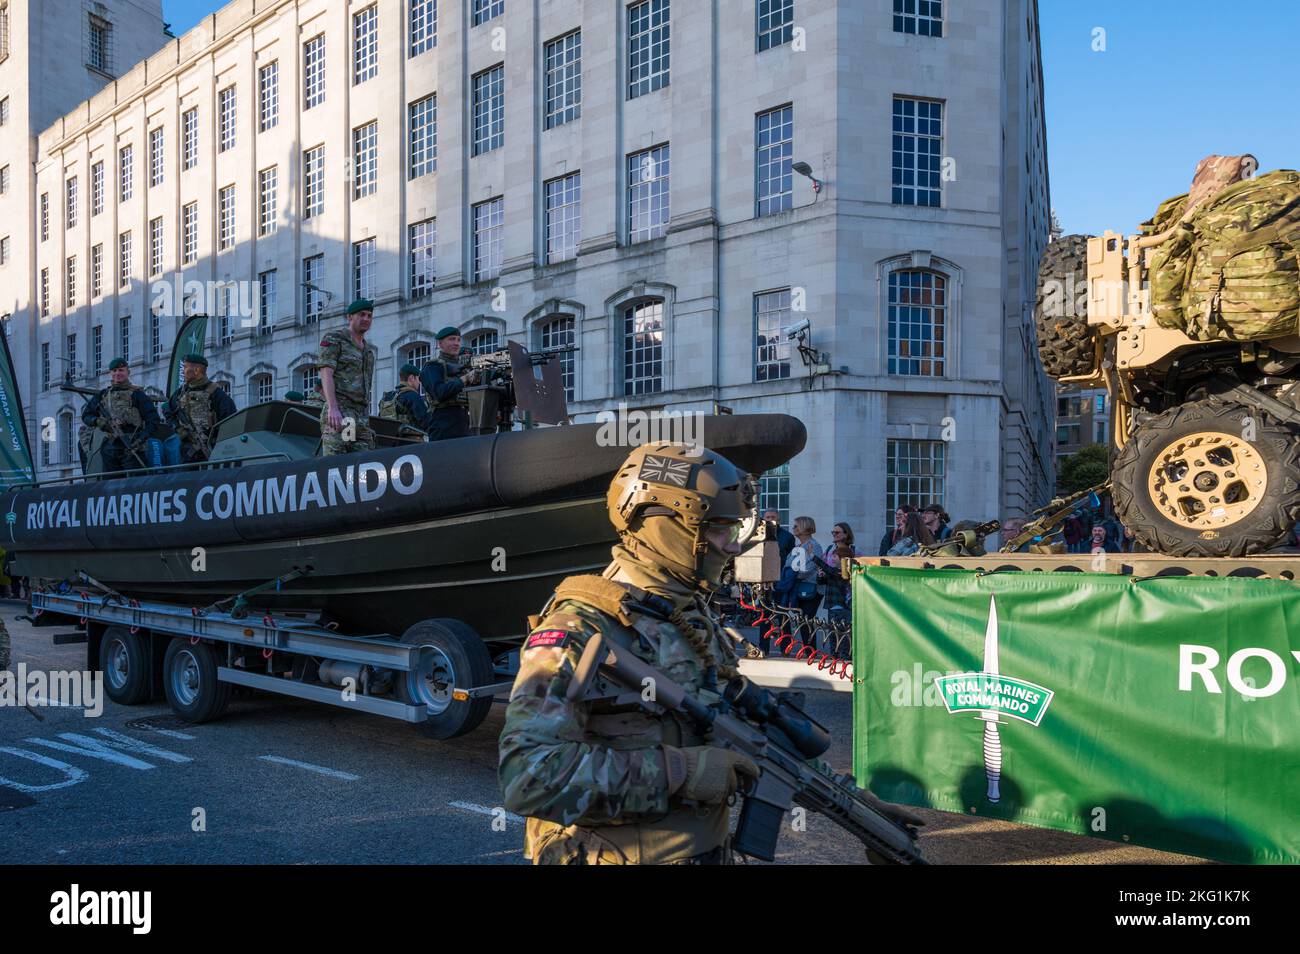 Membres des Commandos royaux de Marines en procession pour le spectacle des maires du Seigneur de 2022. Queen Victoria Street, City of London, Angleterre, Royaume-Uni Banque D'Images